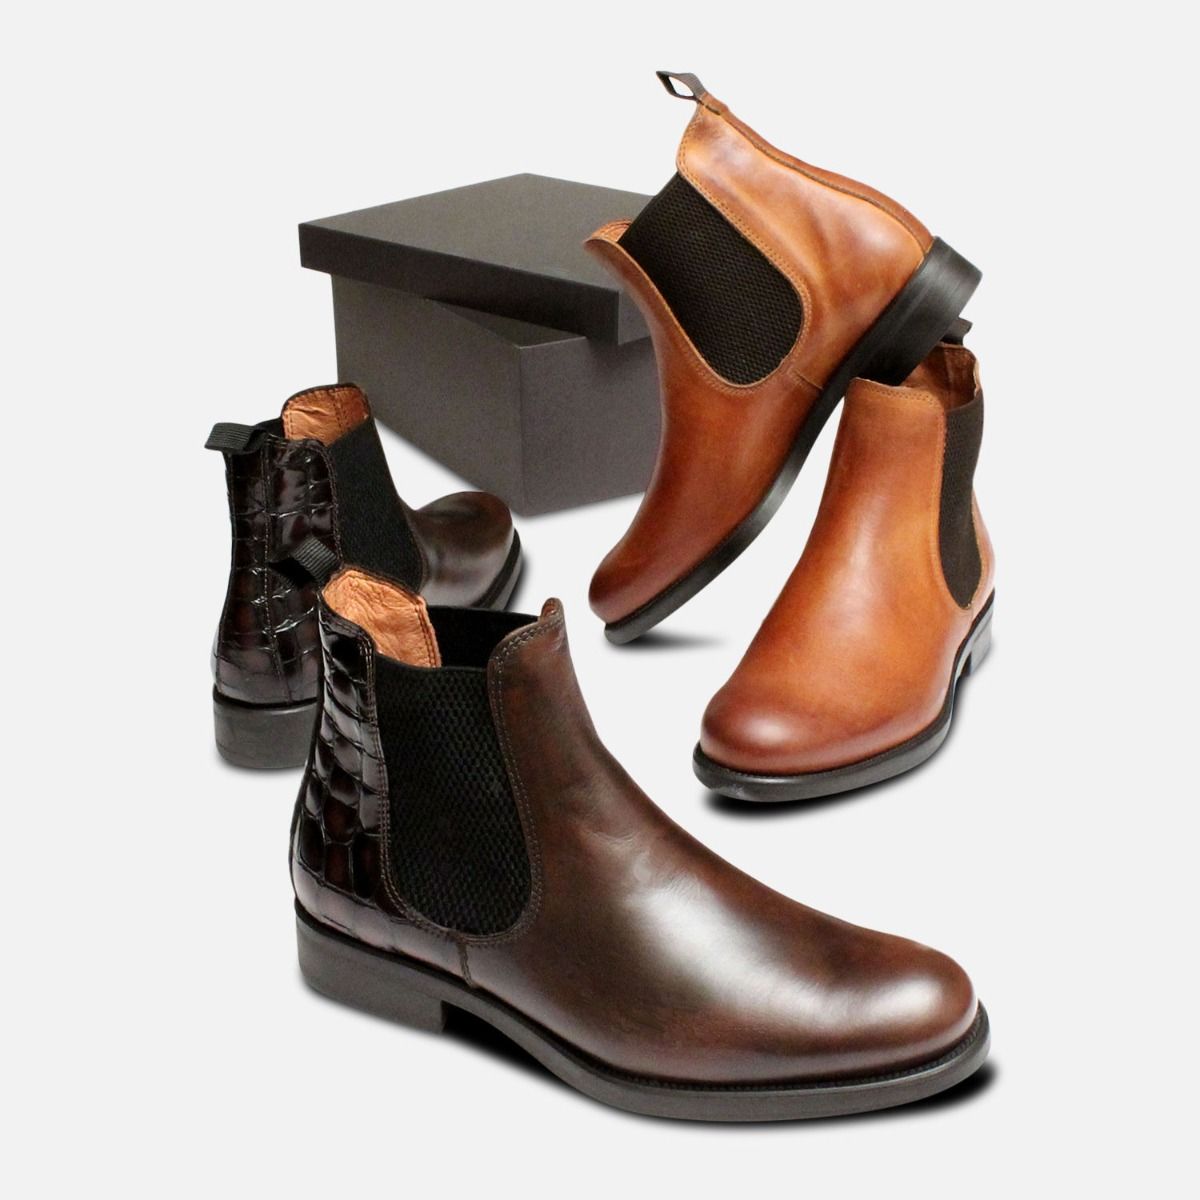 chelsea boots women's shoes